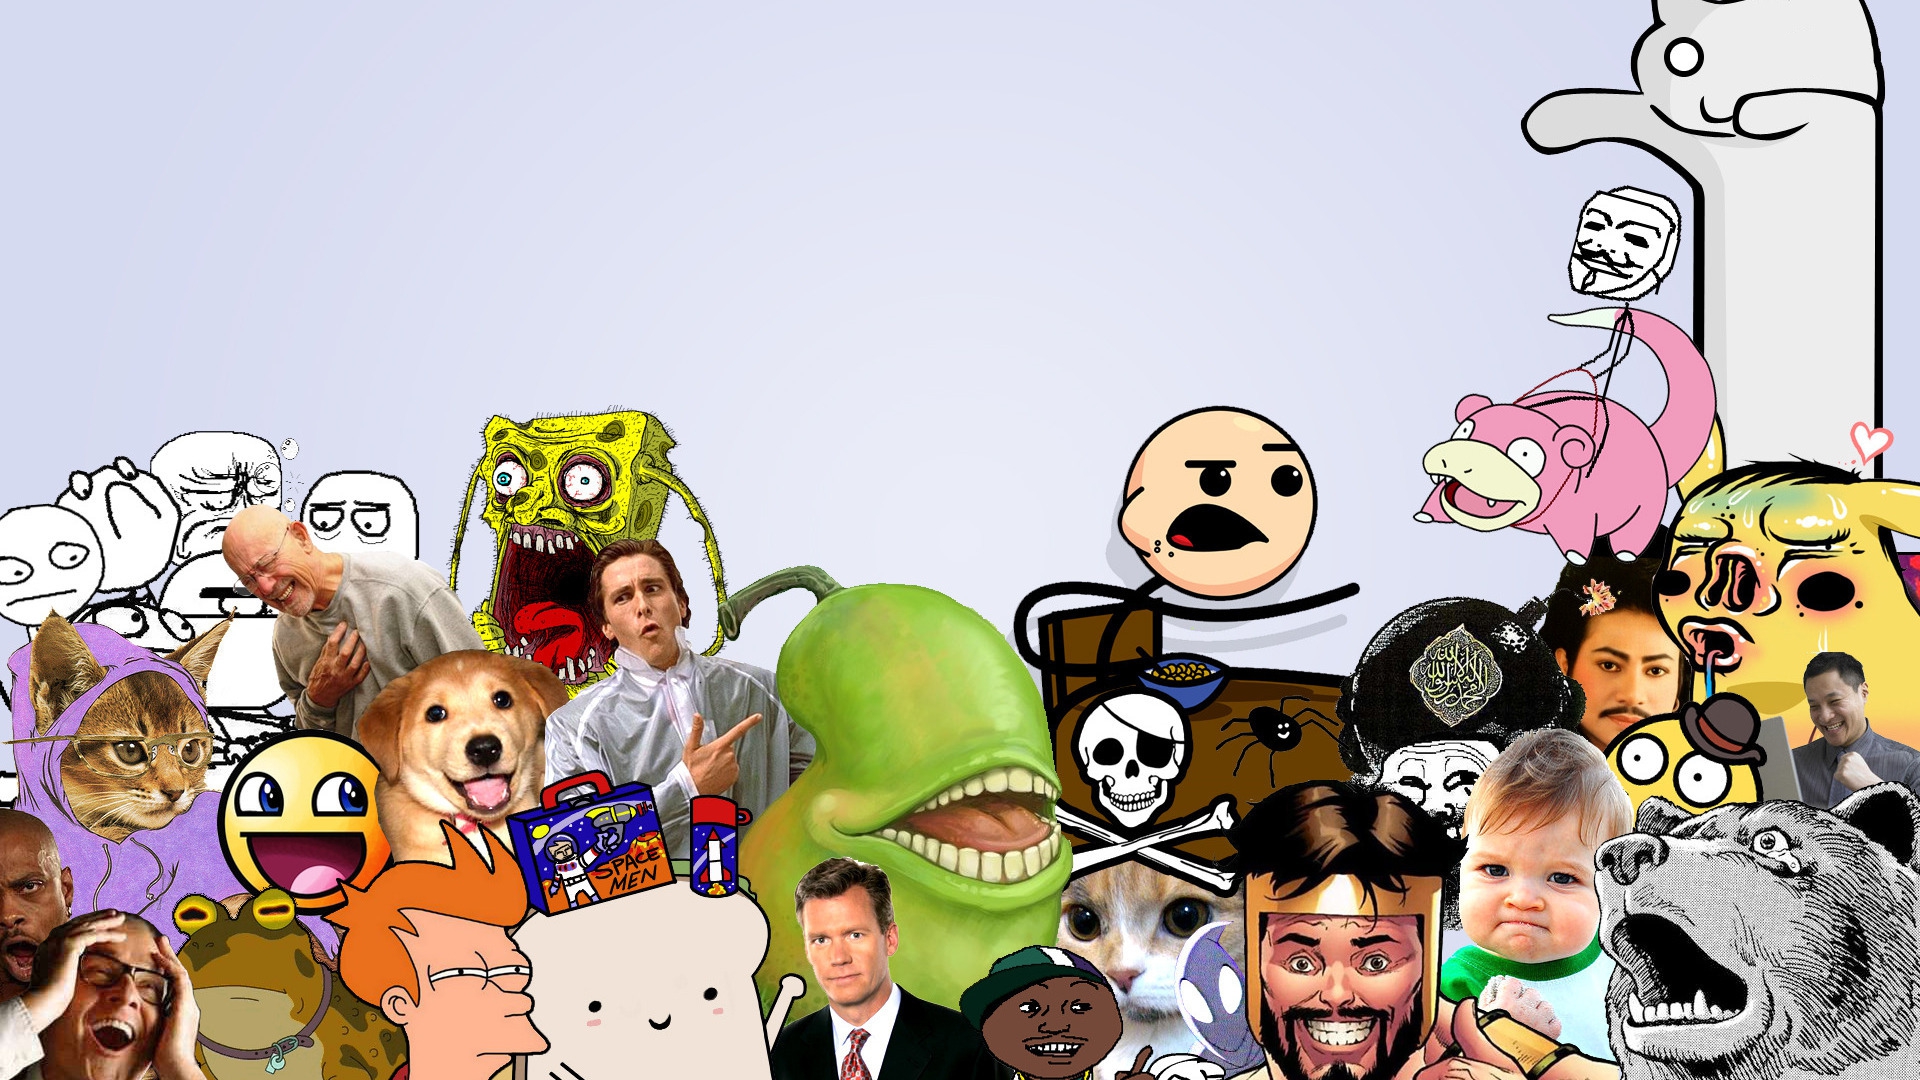 meme wallpaper,dibujos animados,dibujos animados,grupo social,ilustración,arte